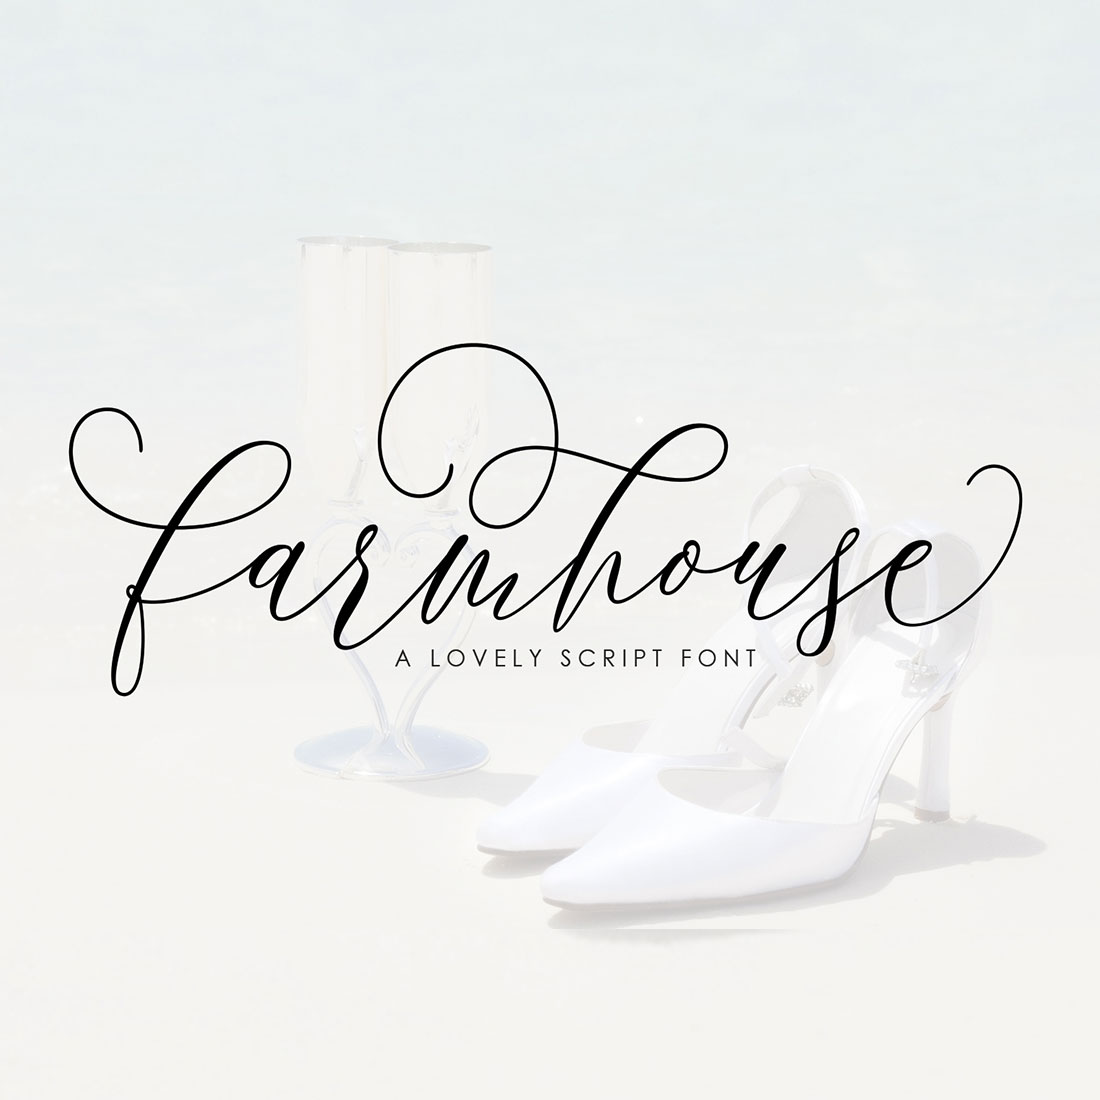 Farmhouse Script cover image.